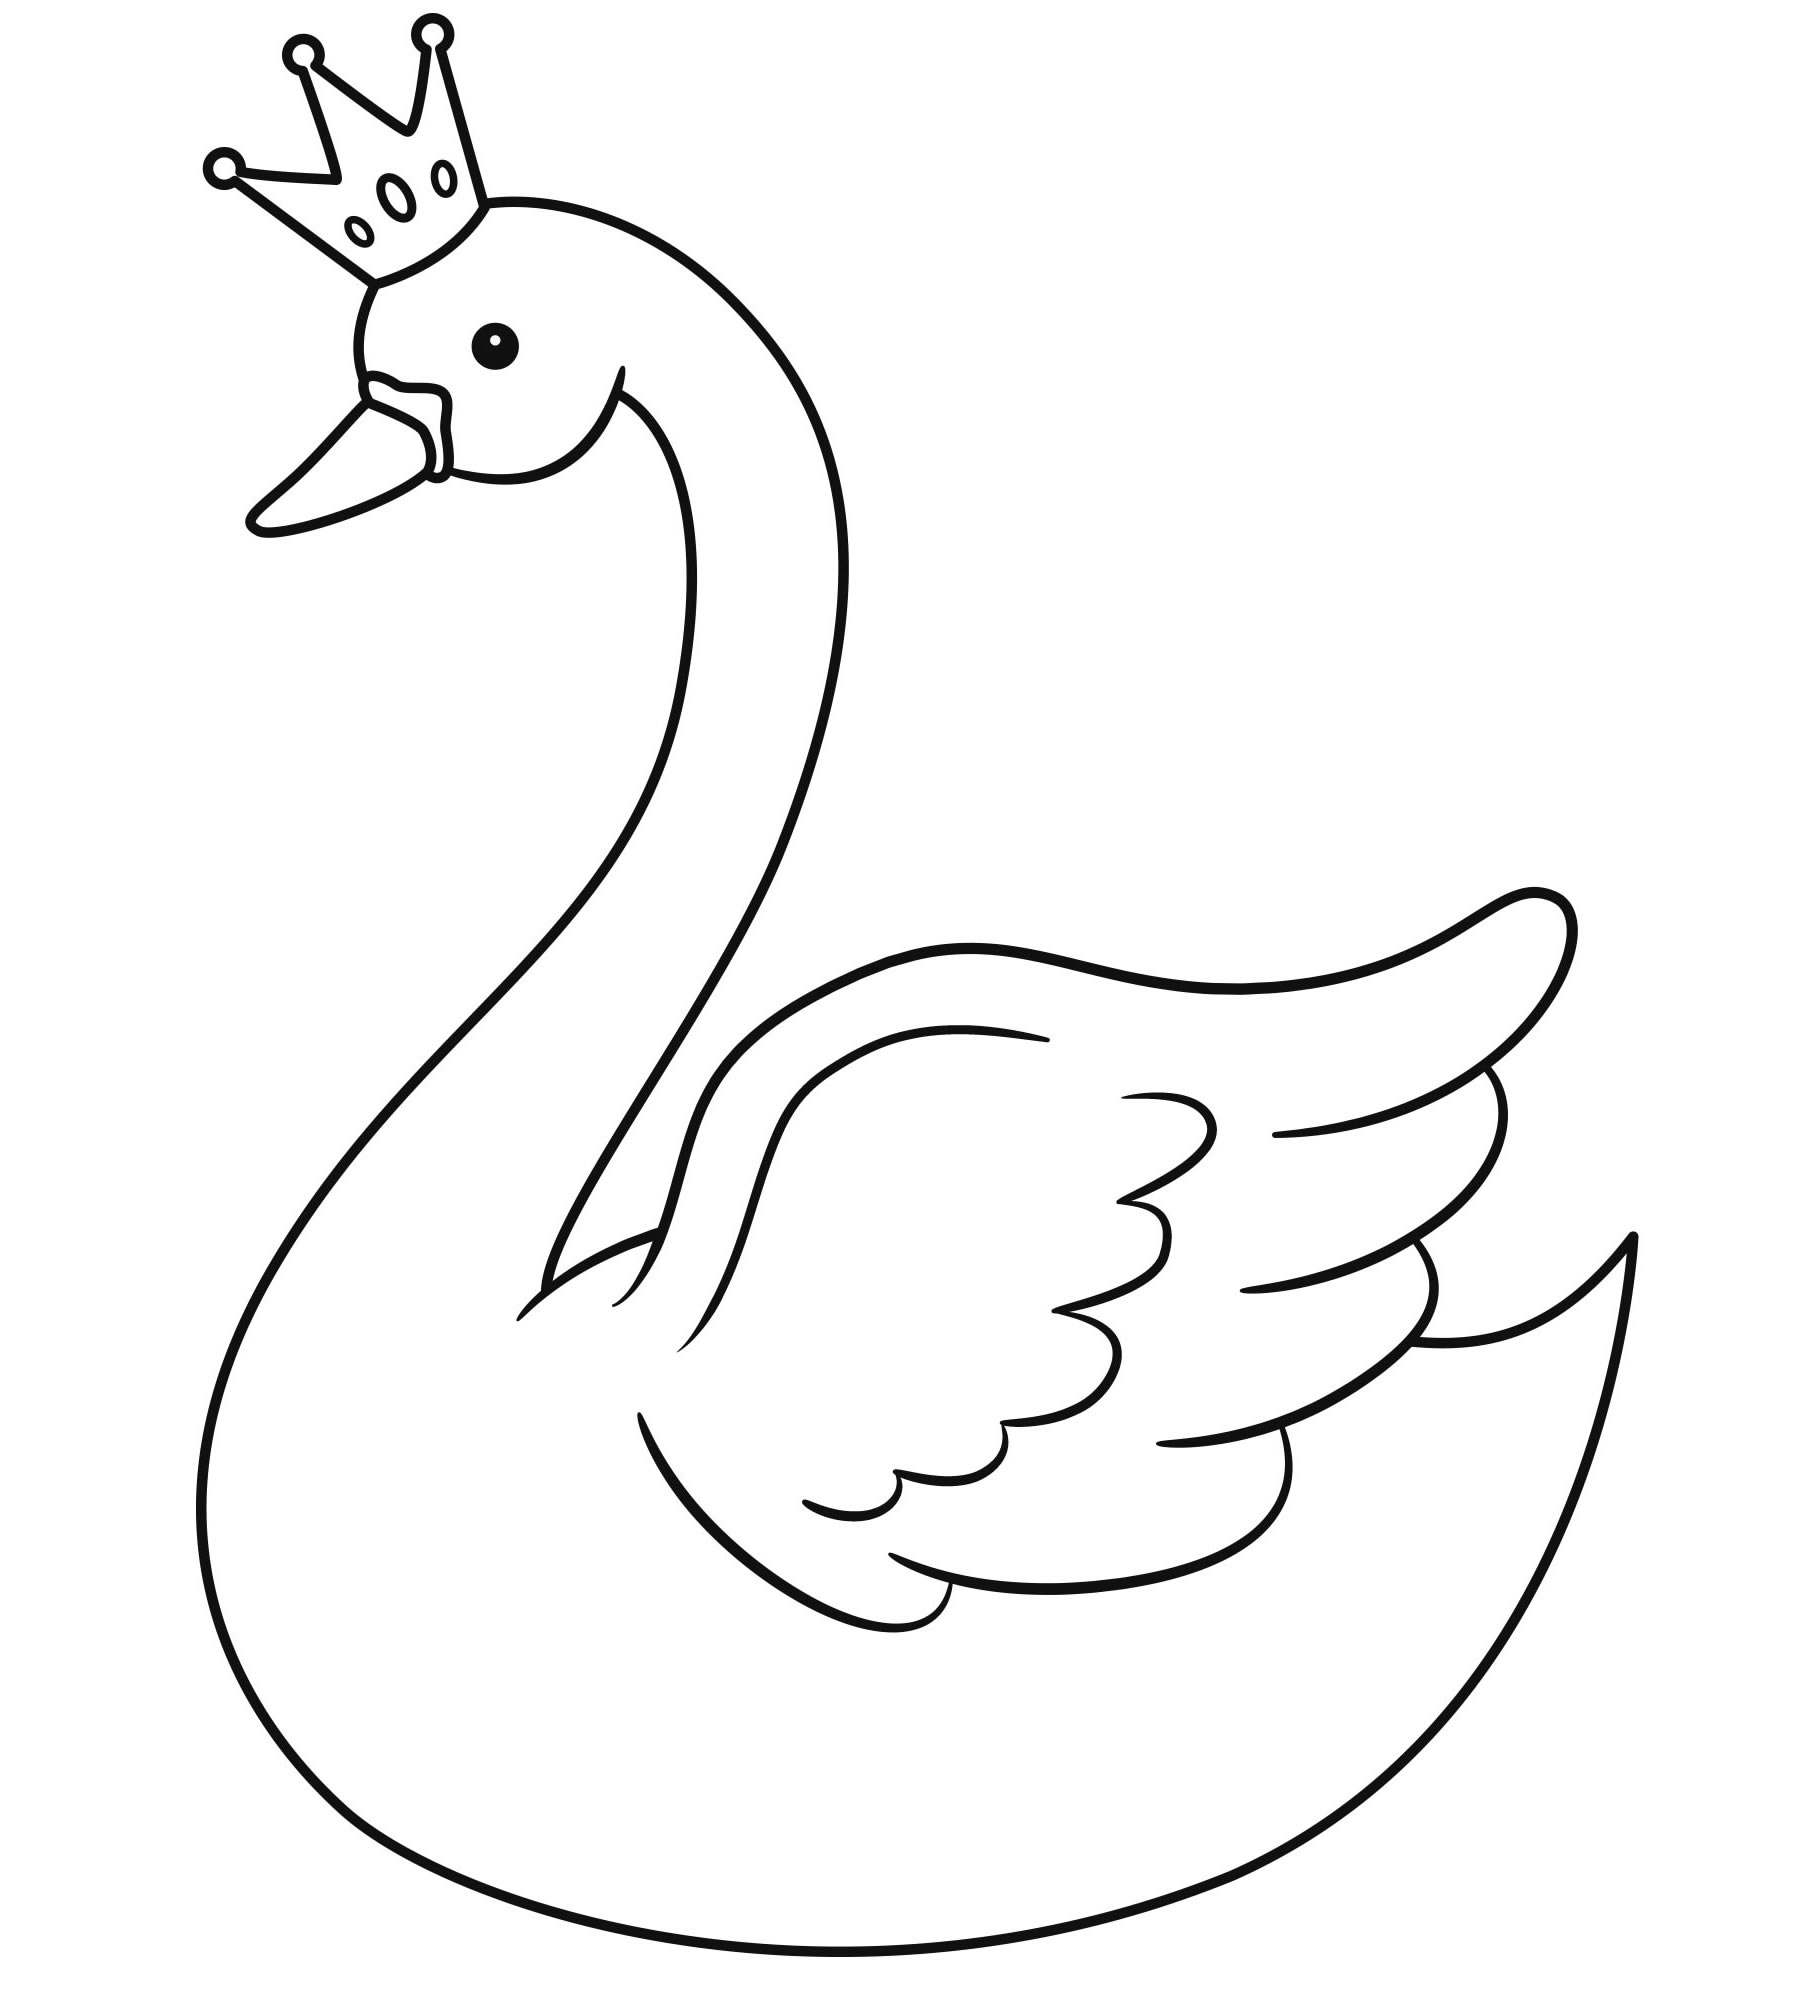 Скачать или распечатать раскраски Лебедь для детей